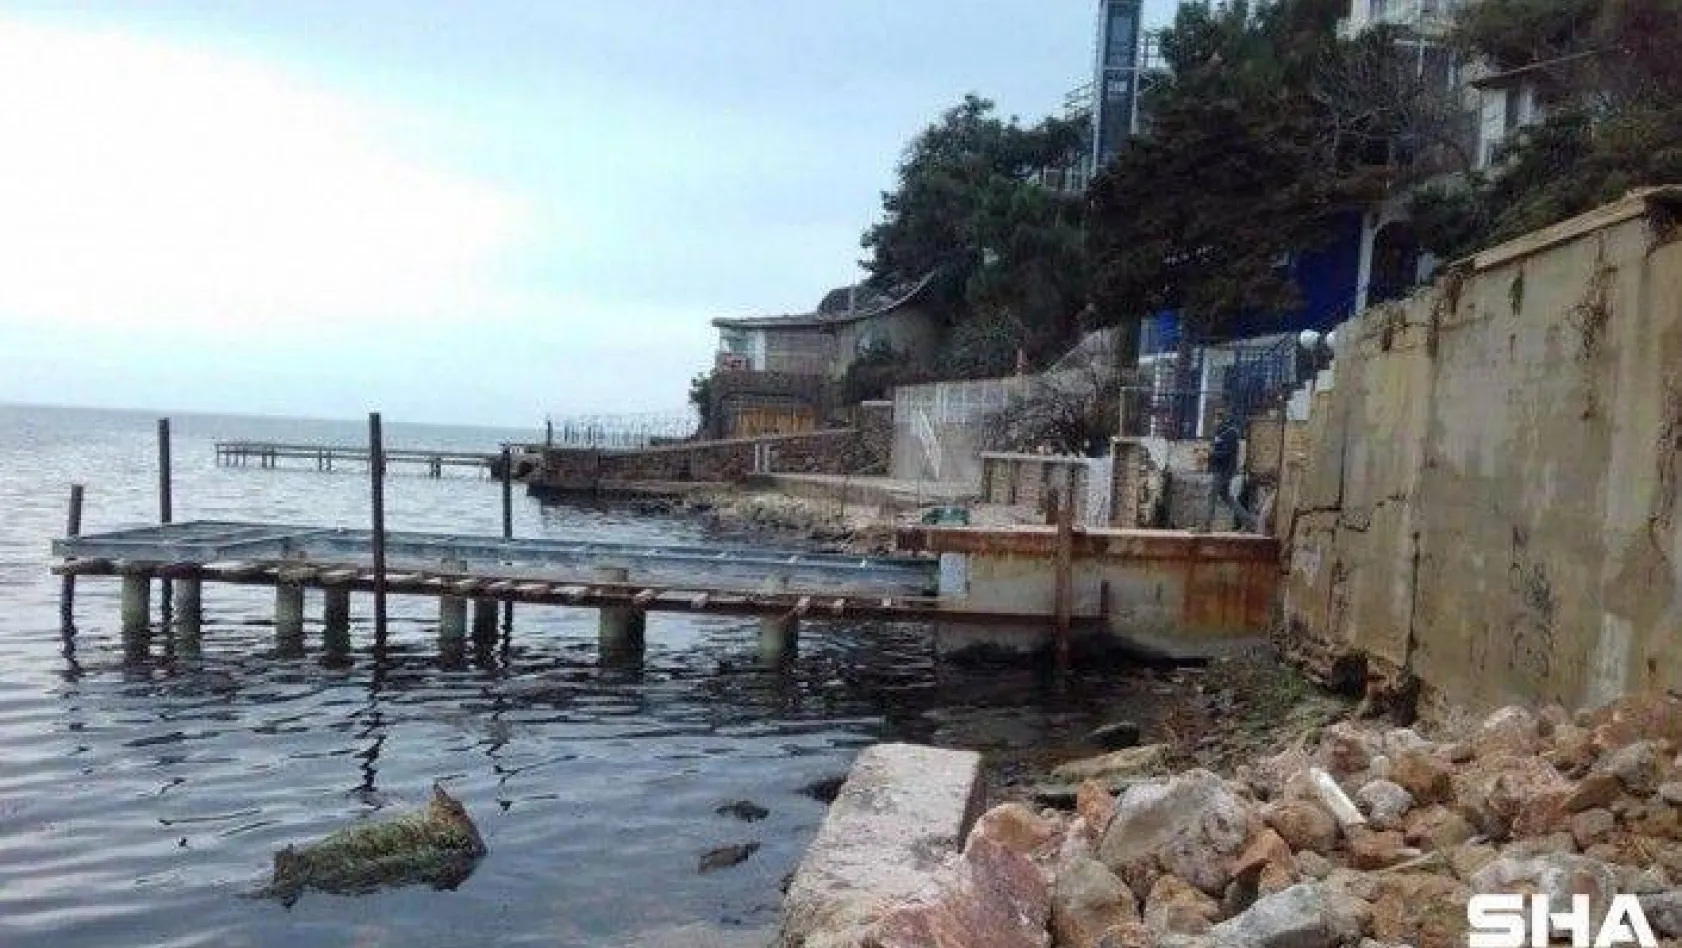 Burgazada'da CHP'li belediye meclis üyesi plajı kendi mülküne katmak istedi, bakanlık yapılaşmayı durdurdu